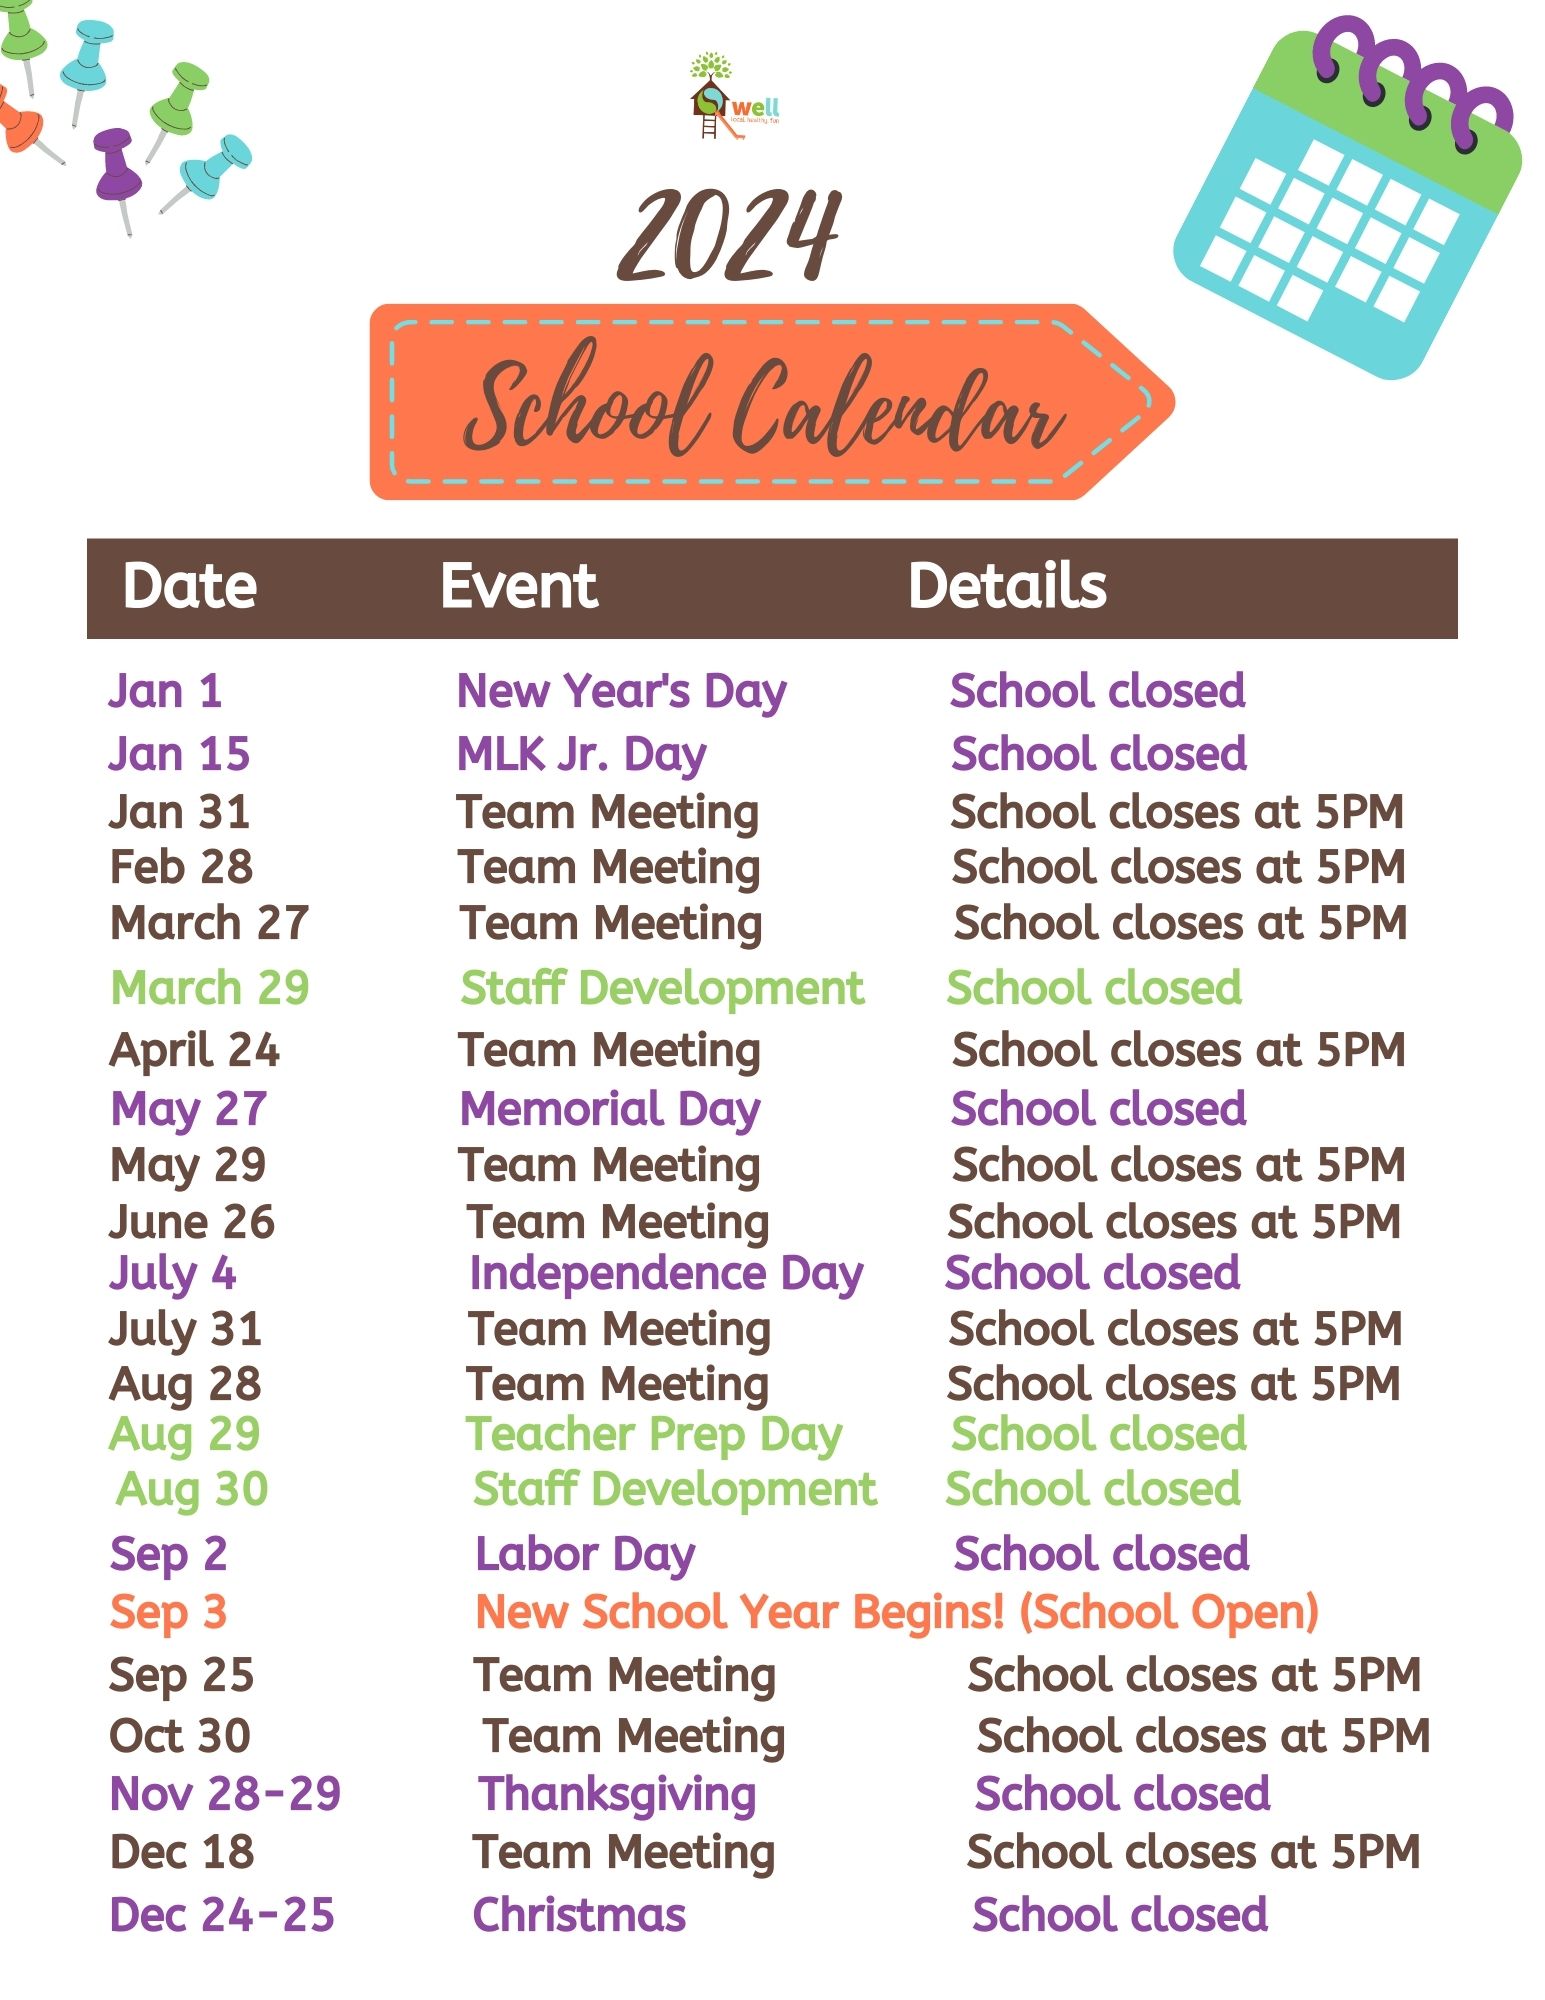 The Well 2024 School Calendar